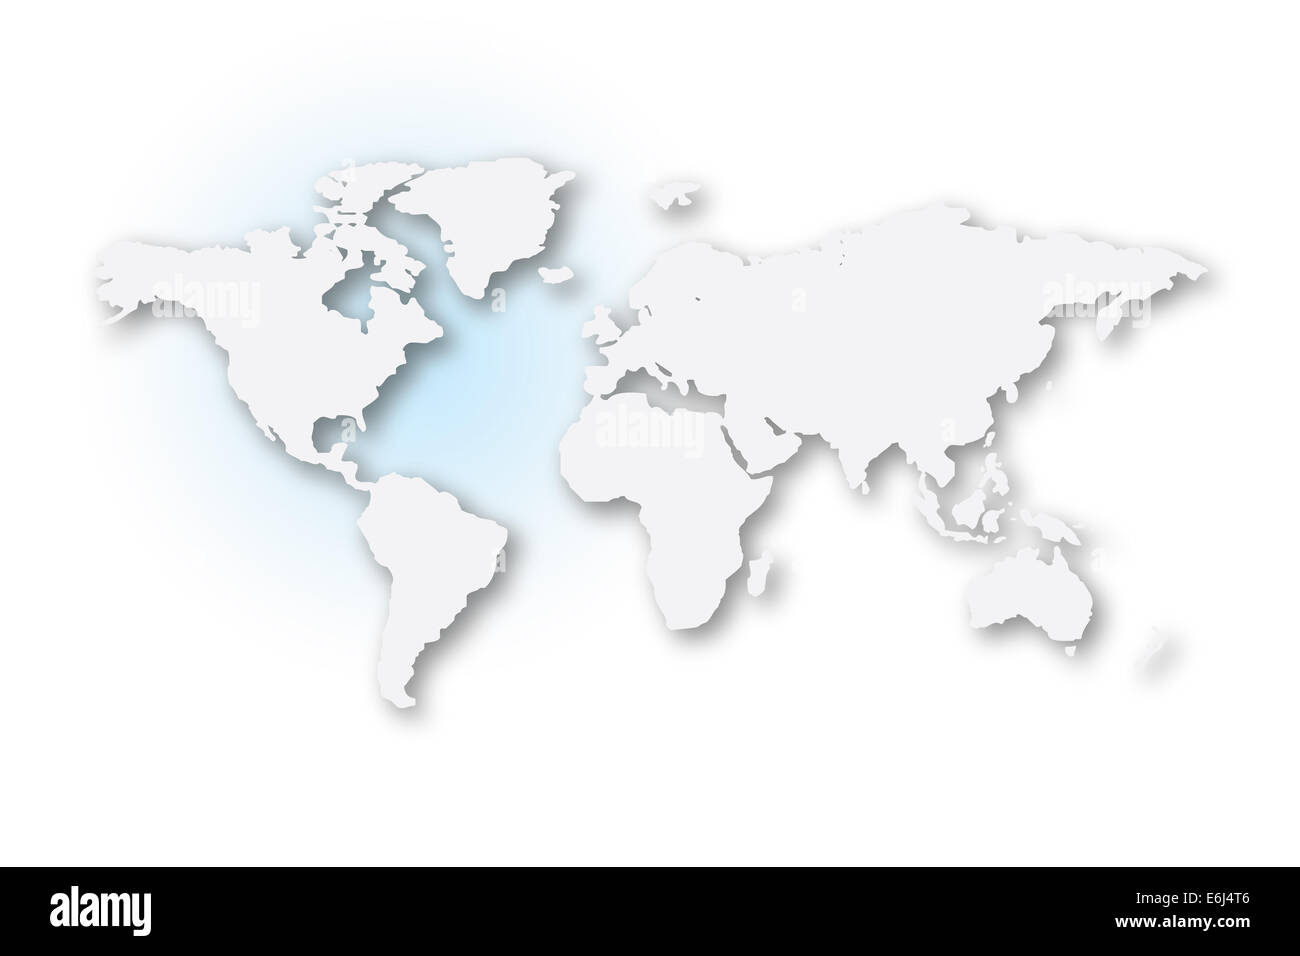 Eine Weltkarte mit allen Kontinenten Illustrated Stockfoto